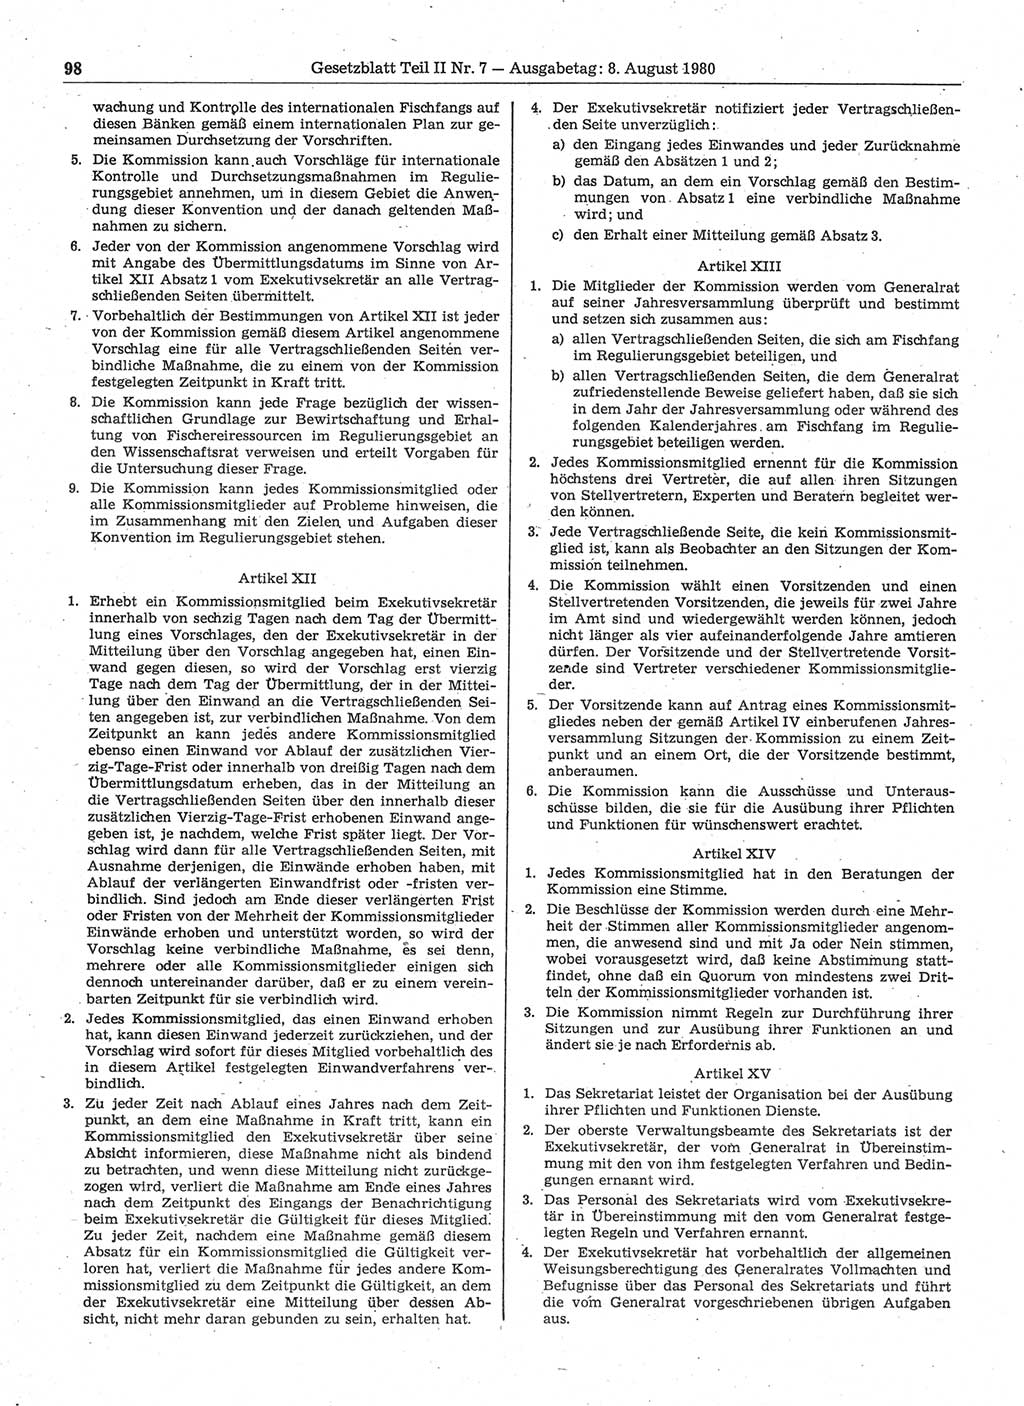 Gesetzblatt (GBl.) der Deutschen Demokratischen Republik (DDR) Teil ⅠⅠ 1980, Seite 98 (GBl. DDR ⅠⅠ 1980, S. 98)